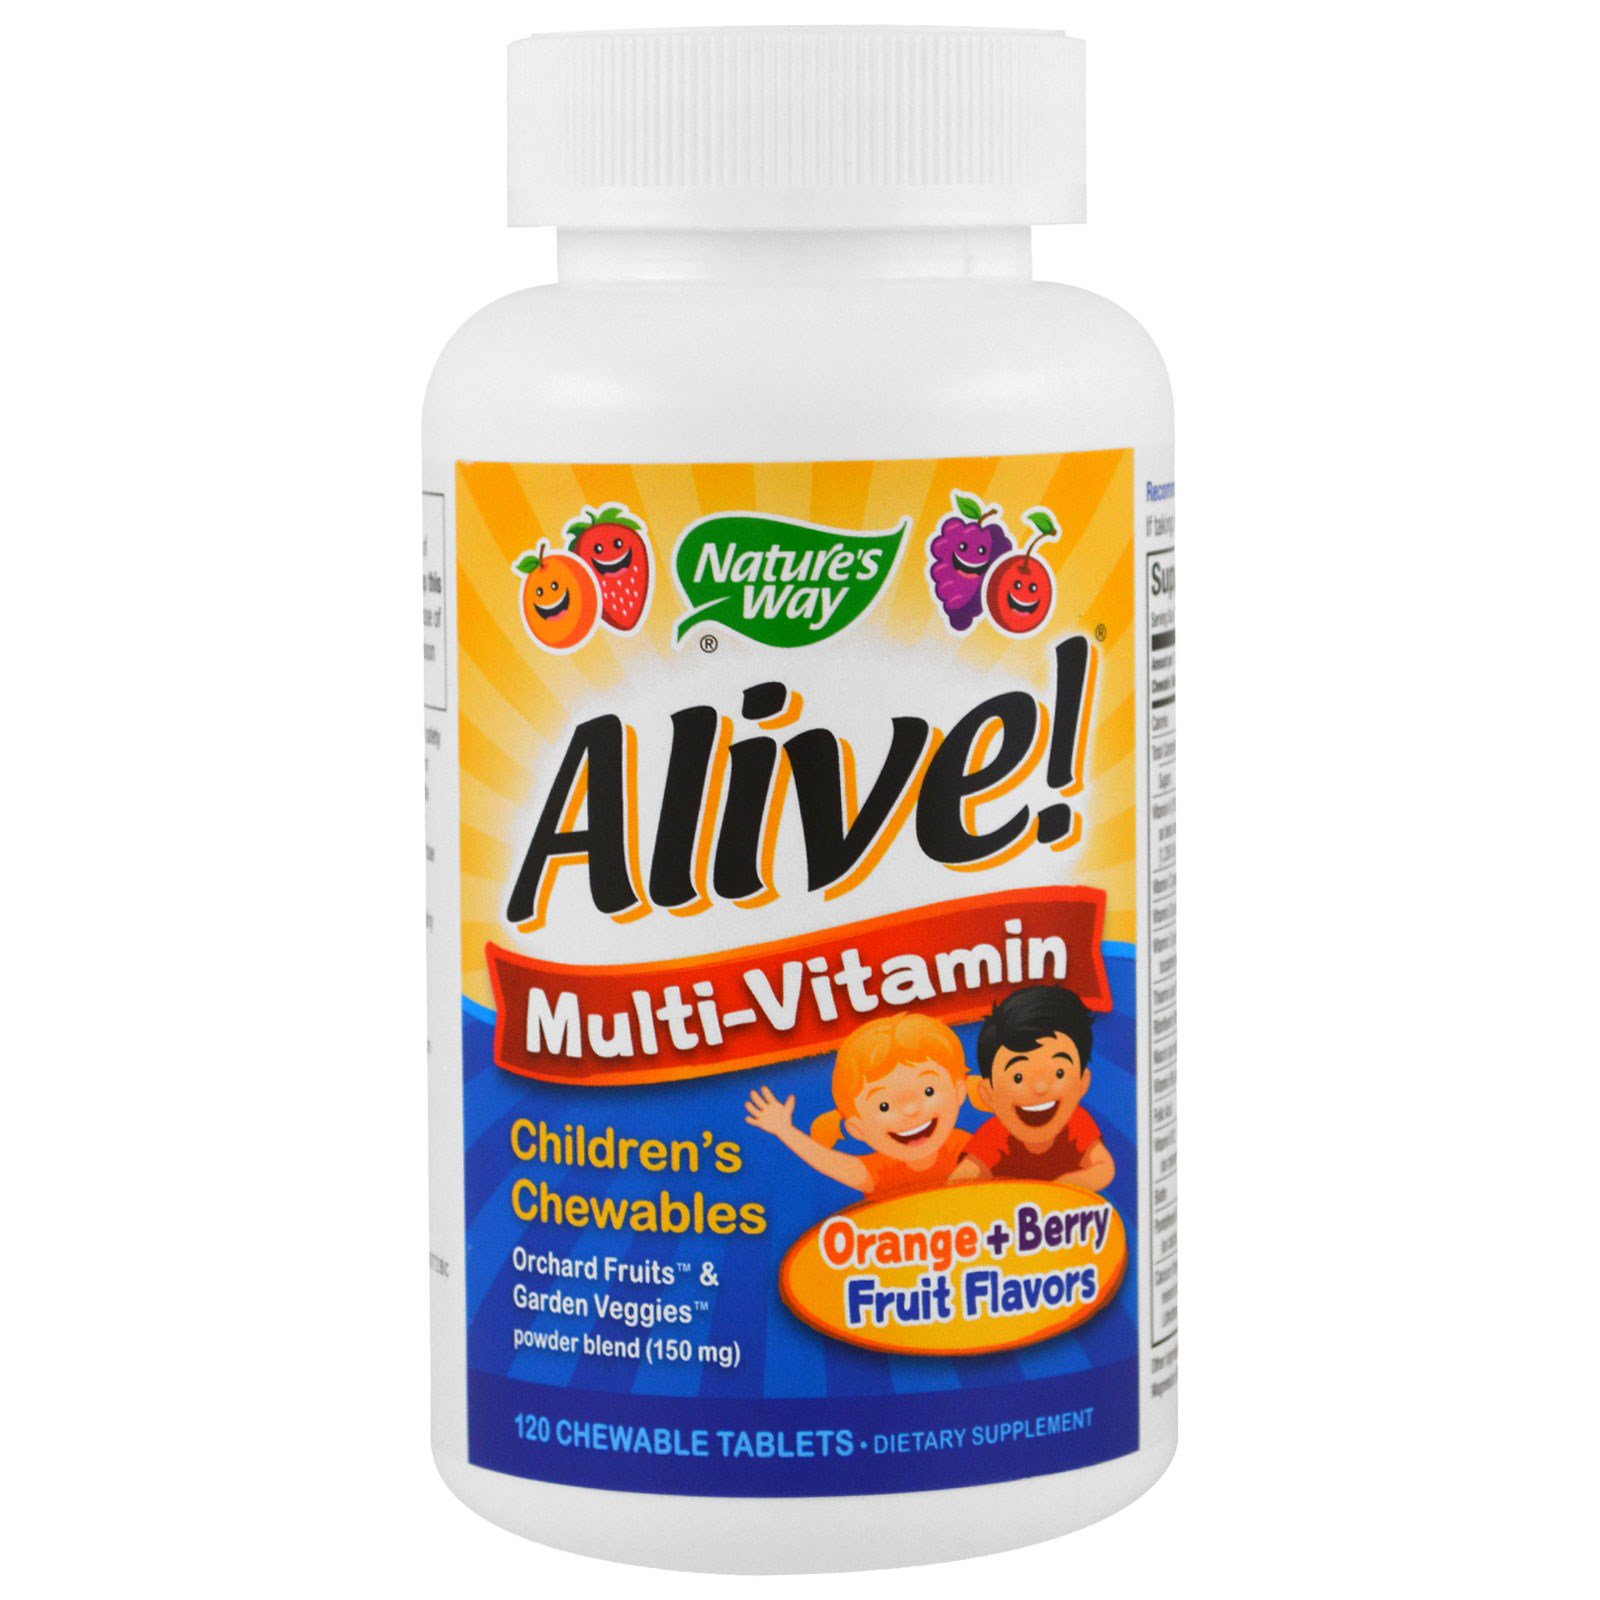 Детский жевательный мультивитамин Alive! Вкус апельсина и ягод, 120 жевательных таблеток  отзывы, применение, состав, цена, купить